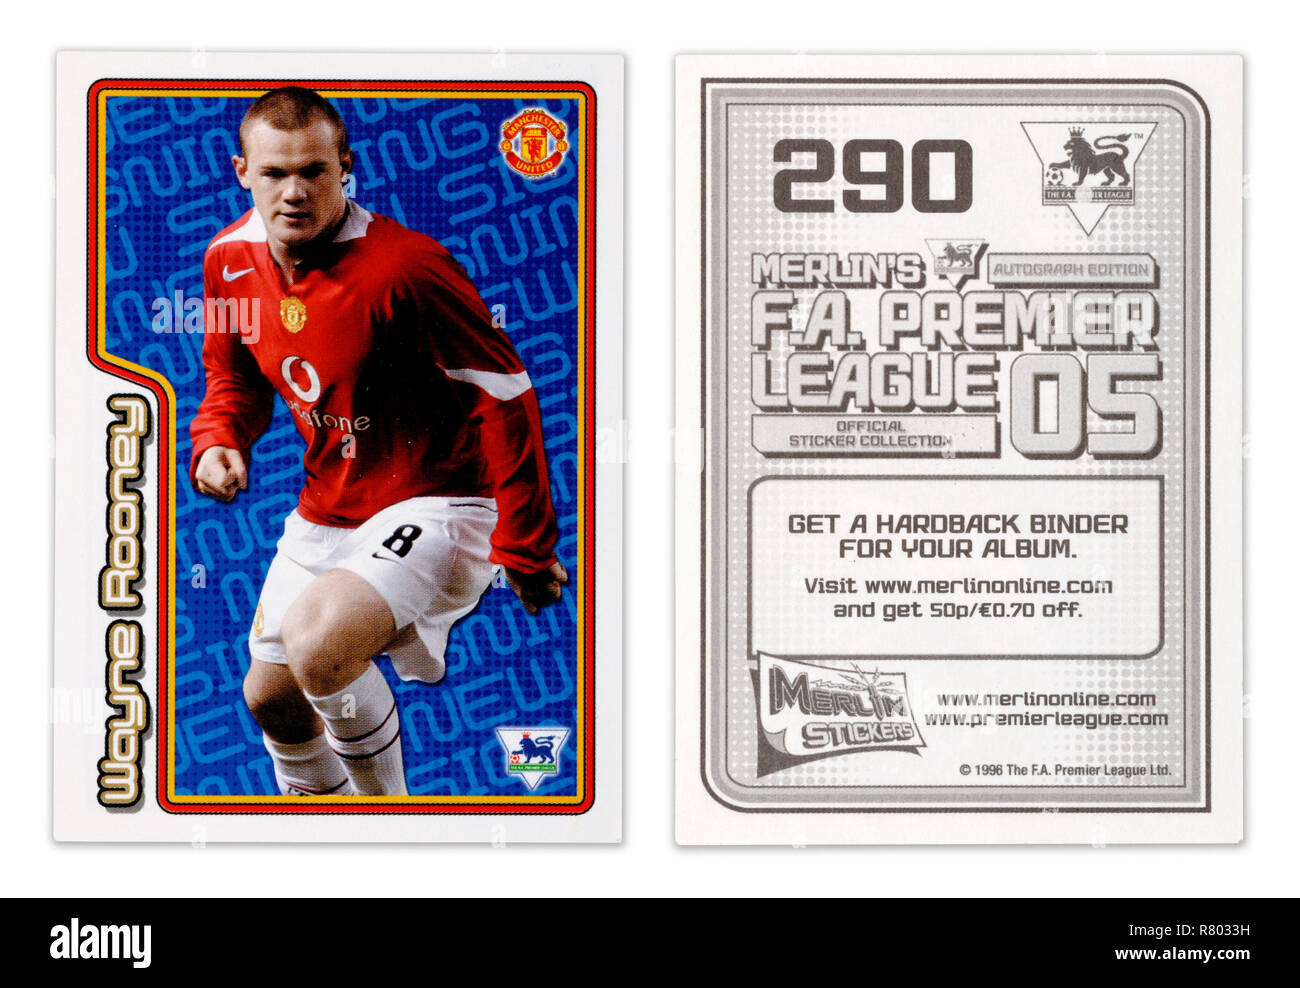 L'avant et l'arrière d'une carte de joueur de football autocollant Merlin à partir de 1996 avec Wayne Rooney de jouer pour Manchester United Banque D'Images